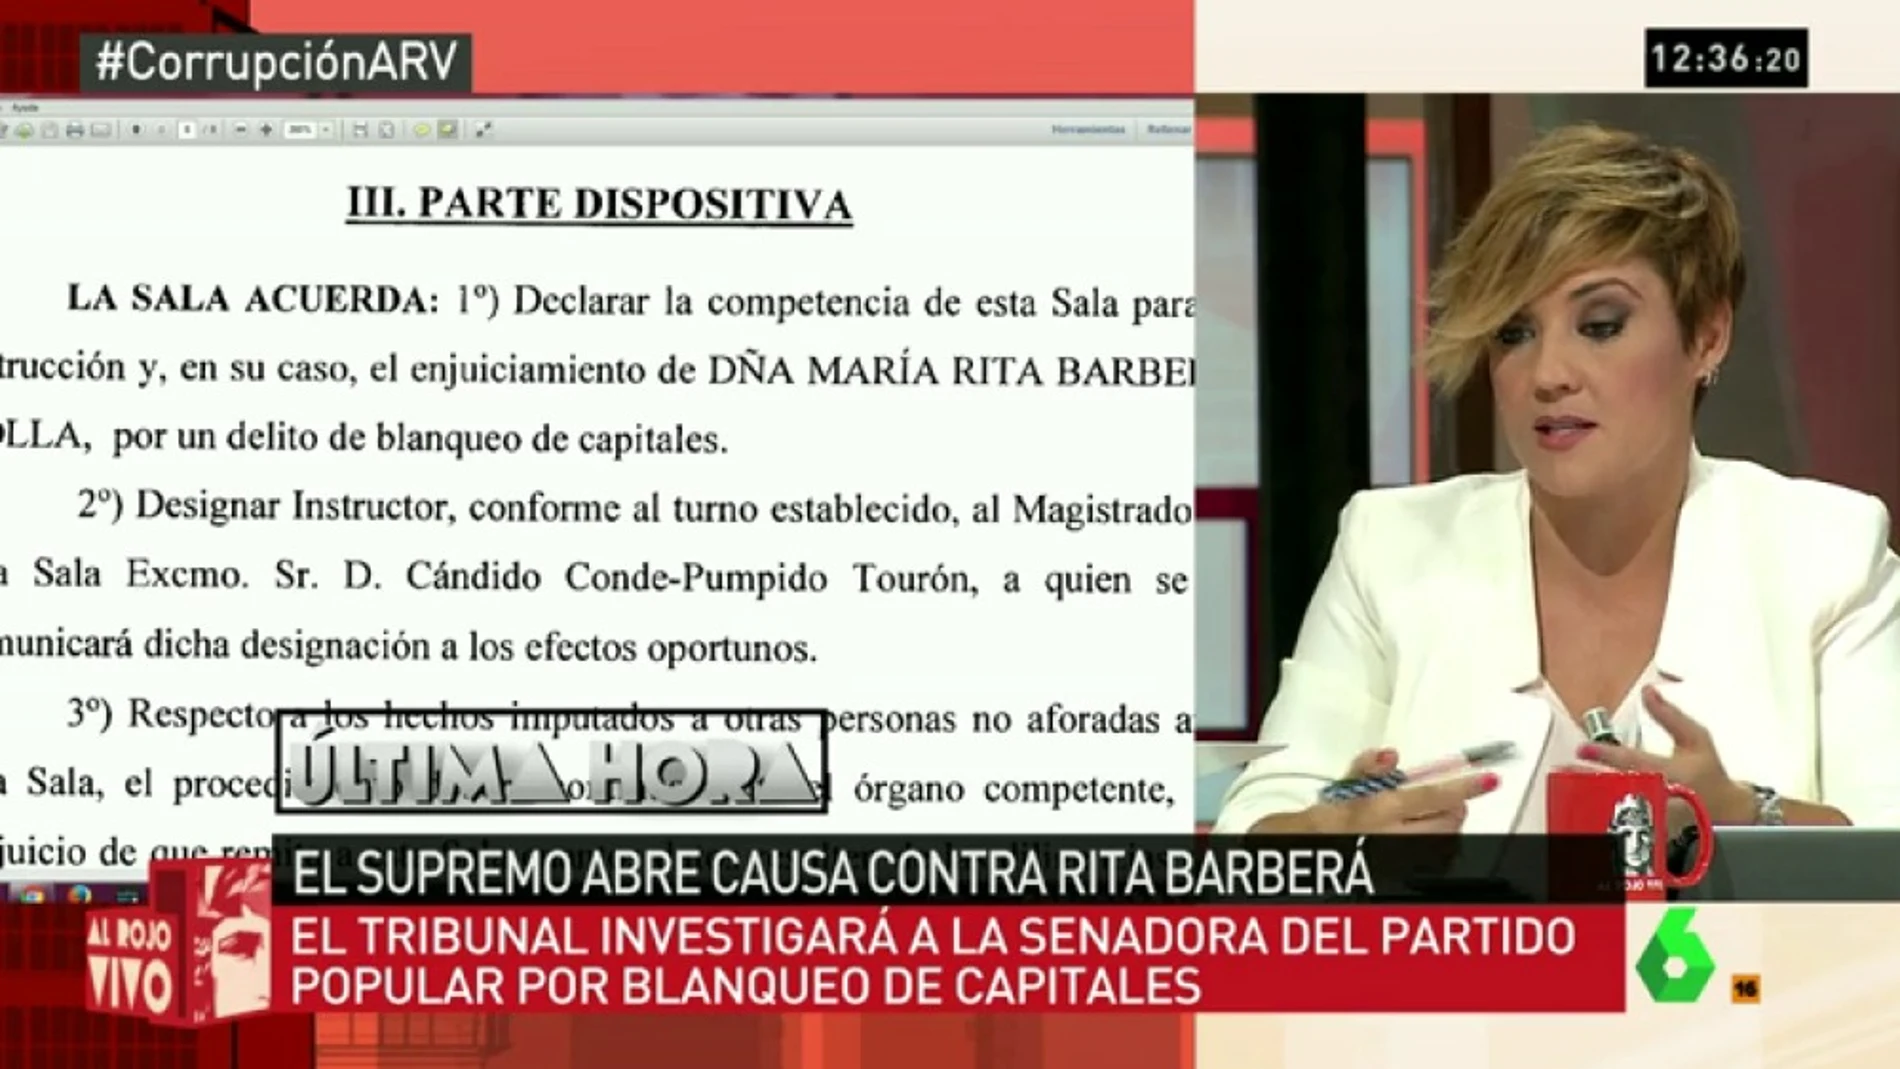 Cristina Pardo: "El PP dice que en realidad Rita no está imputada, sino investigada, así que esperarán para actuar"